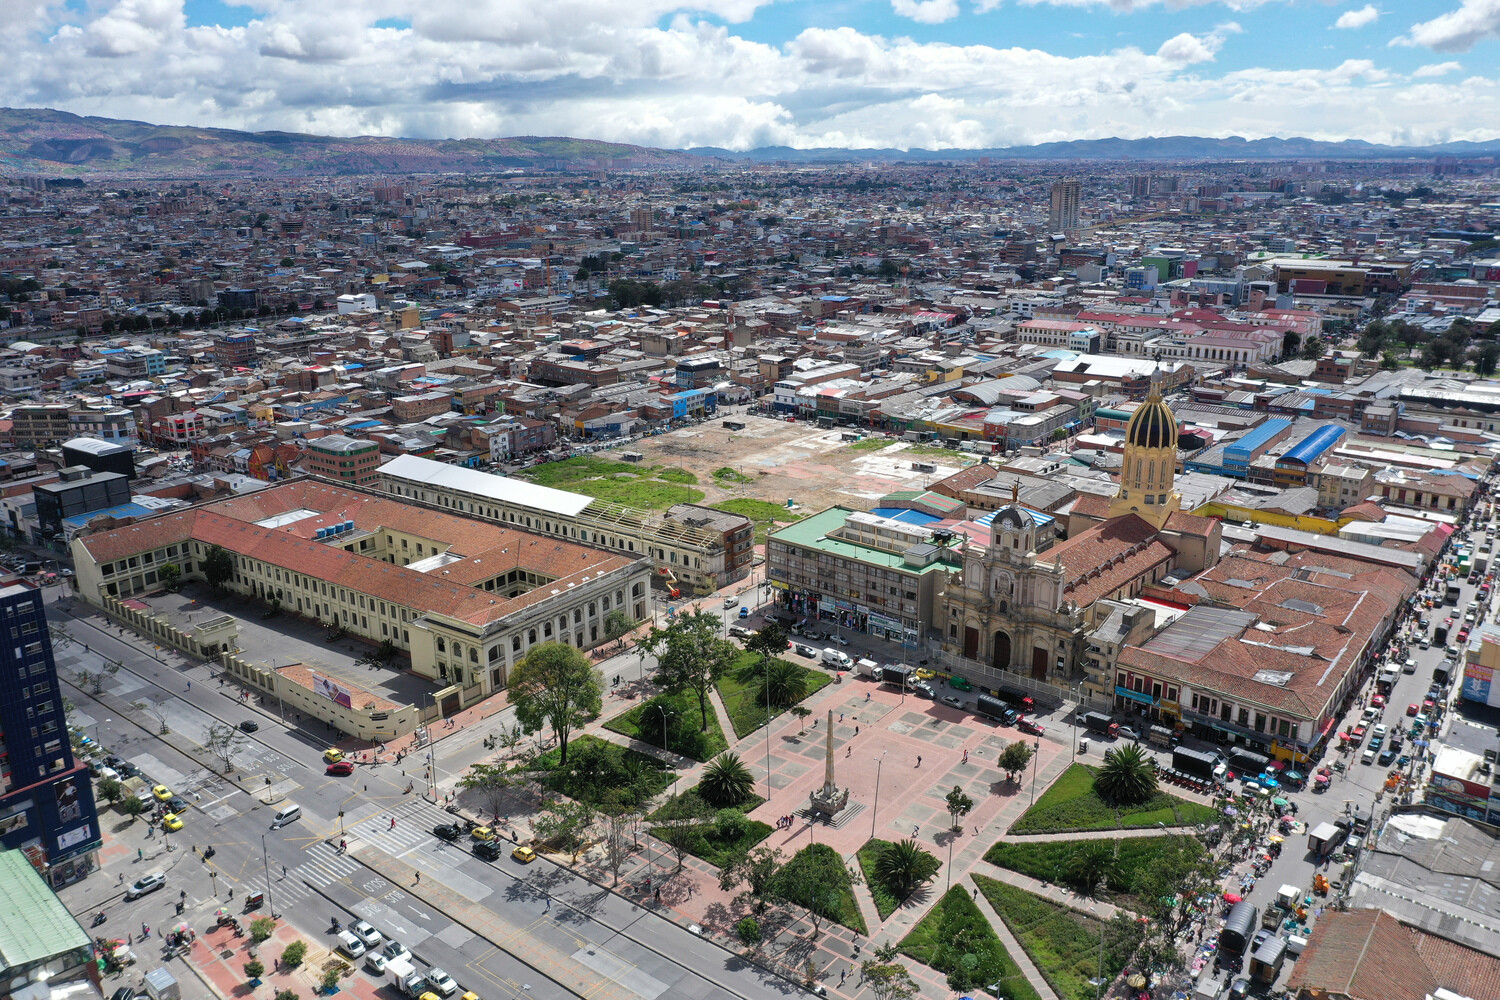 bronx-distrito-creativo-proyecto-de-regeneracion-urbana-en-colombia-4-alt